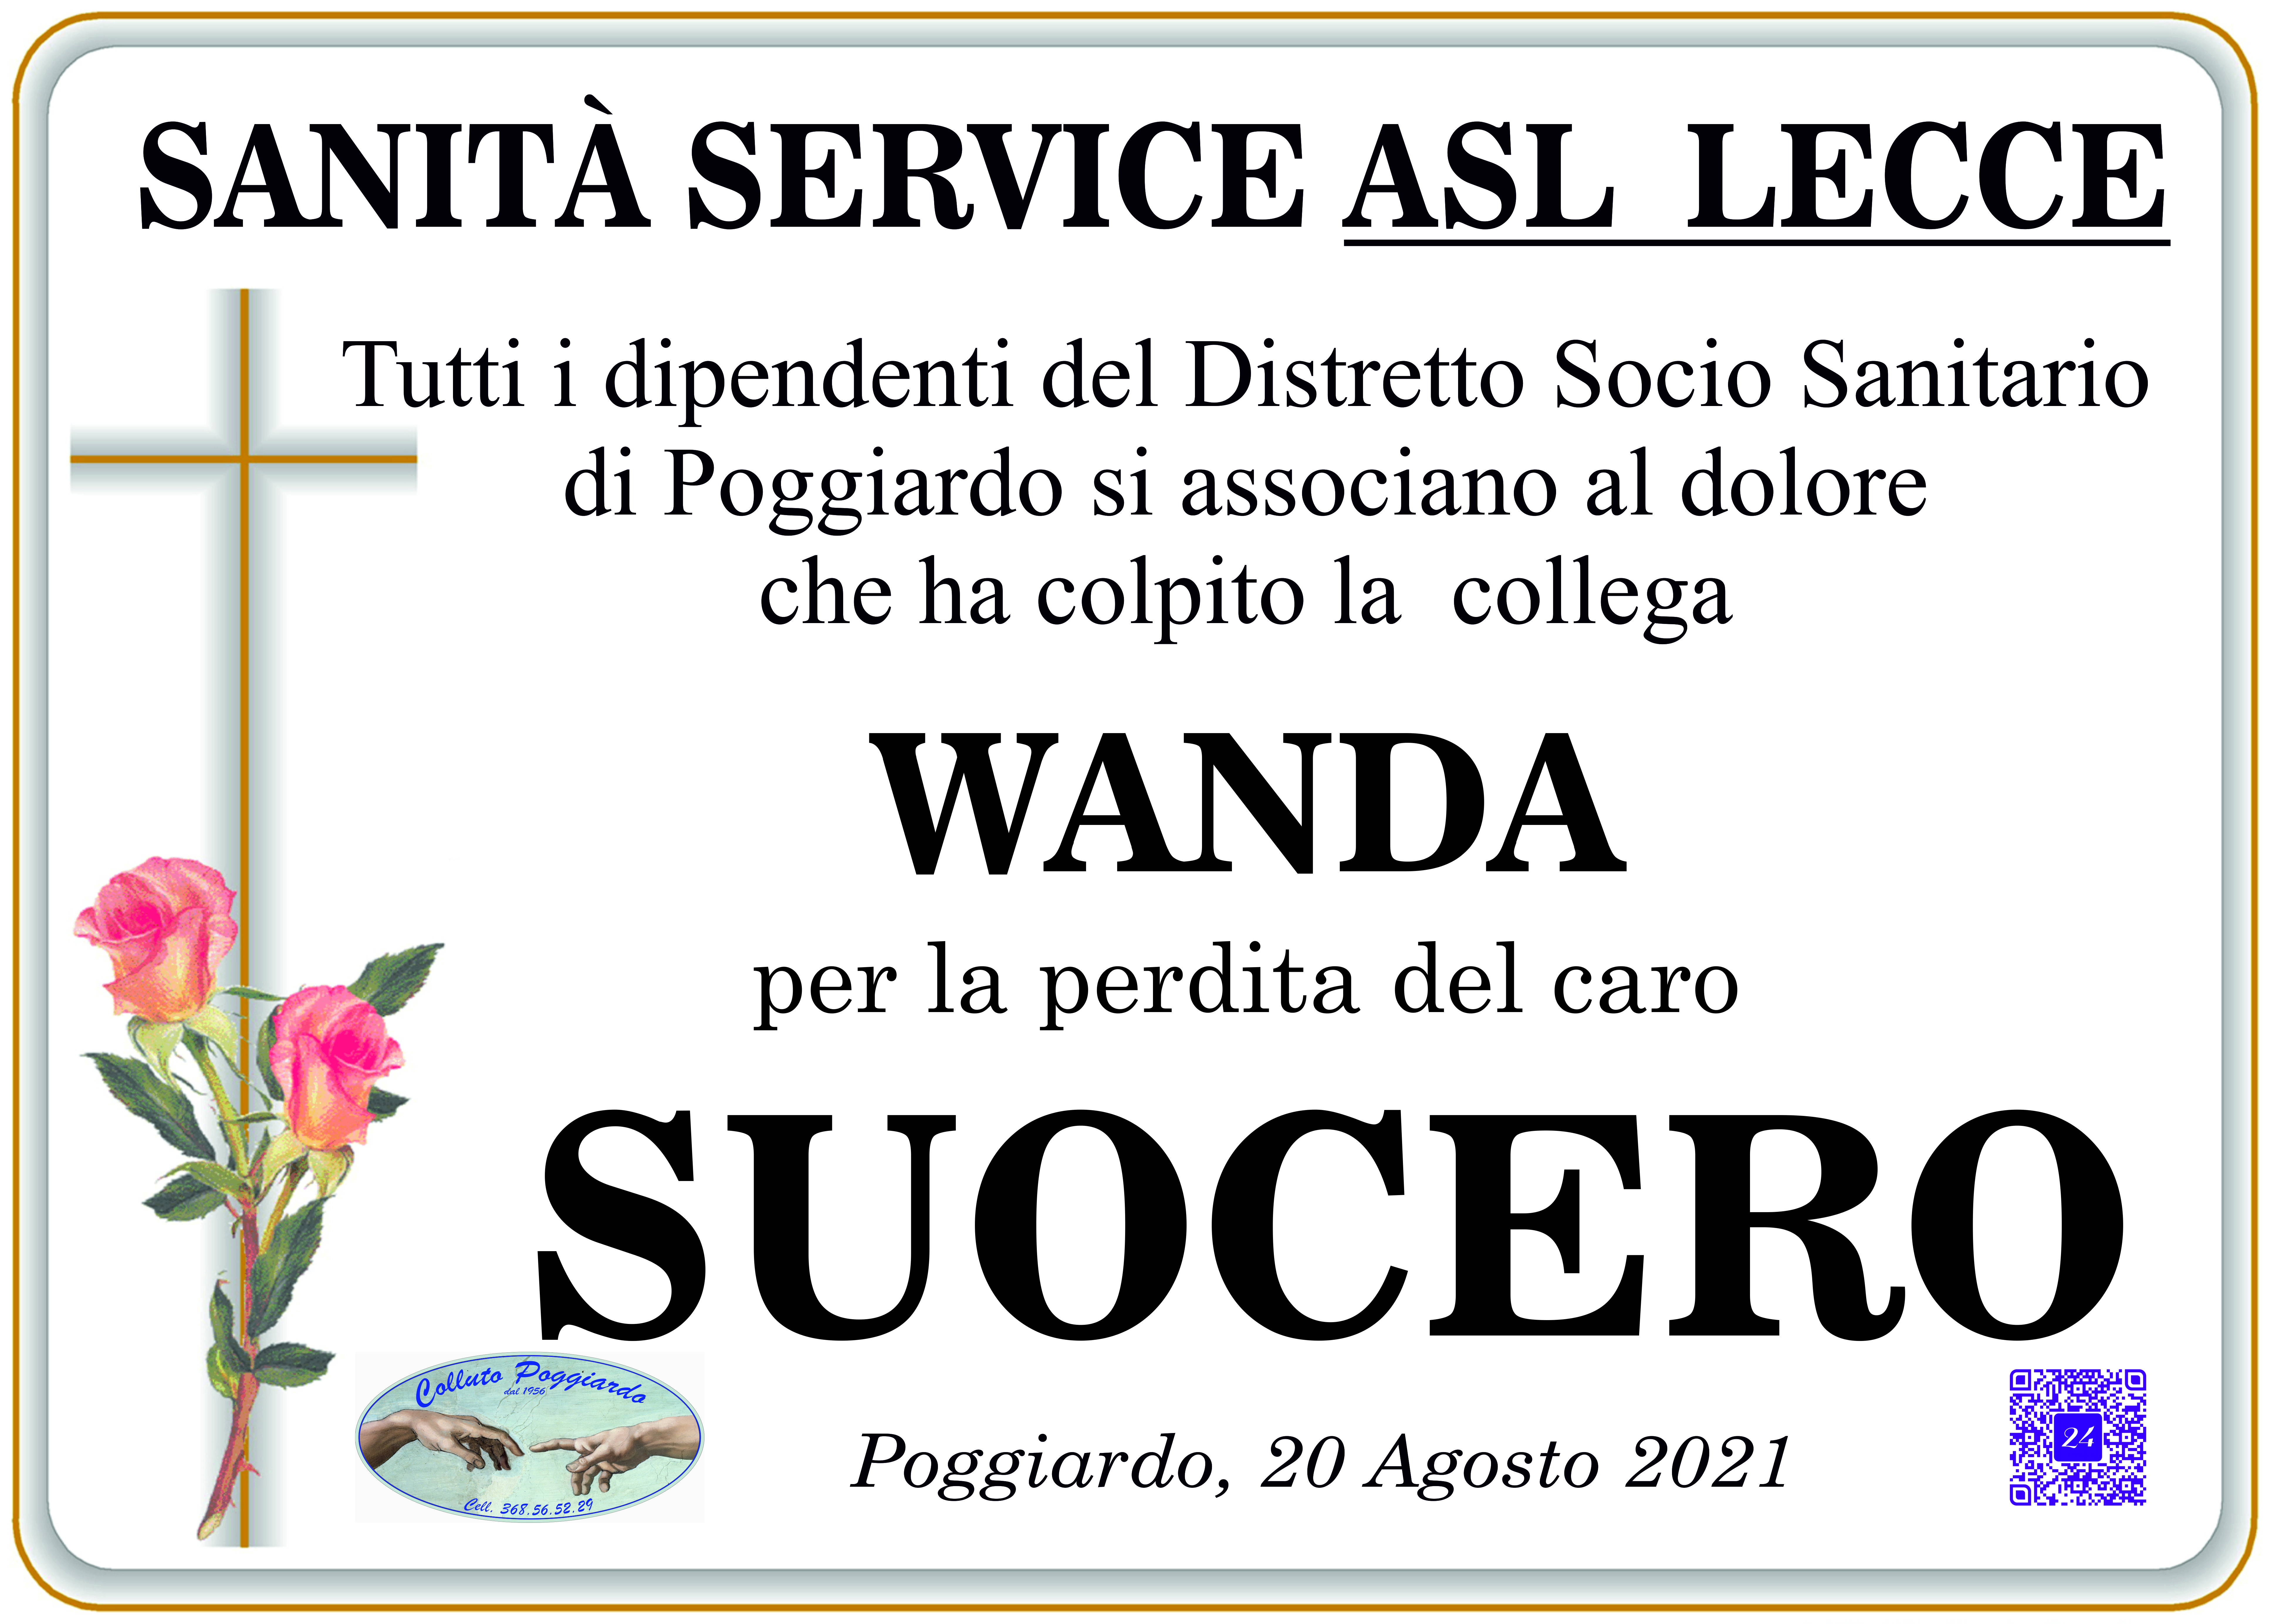 Sanità Service ASL - Lecce